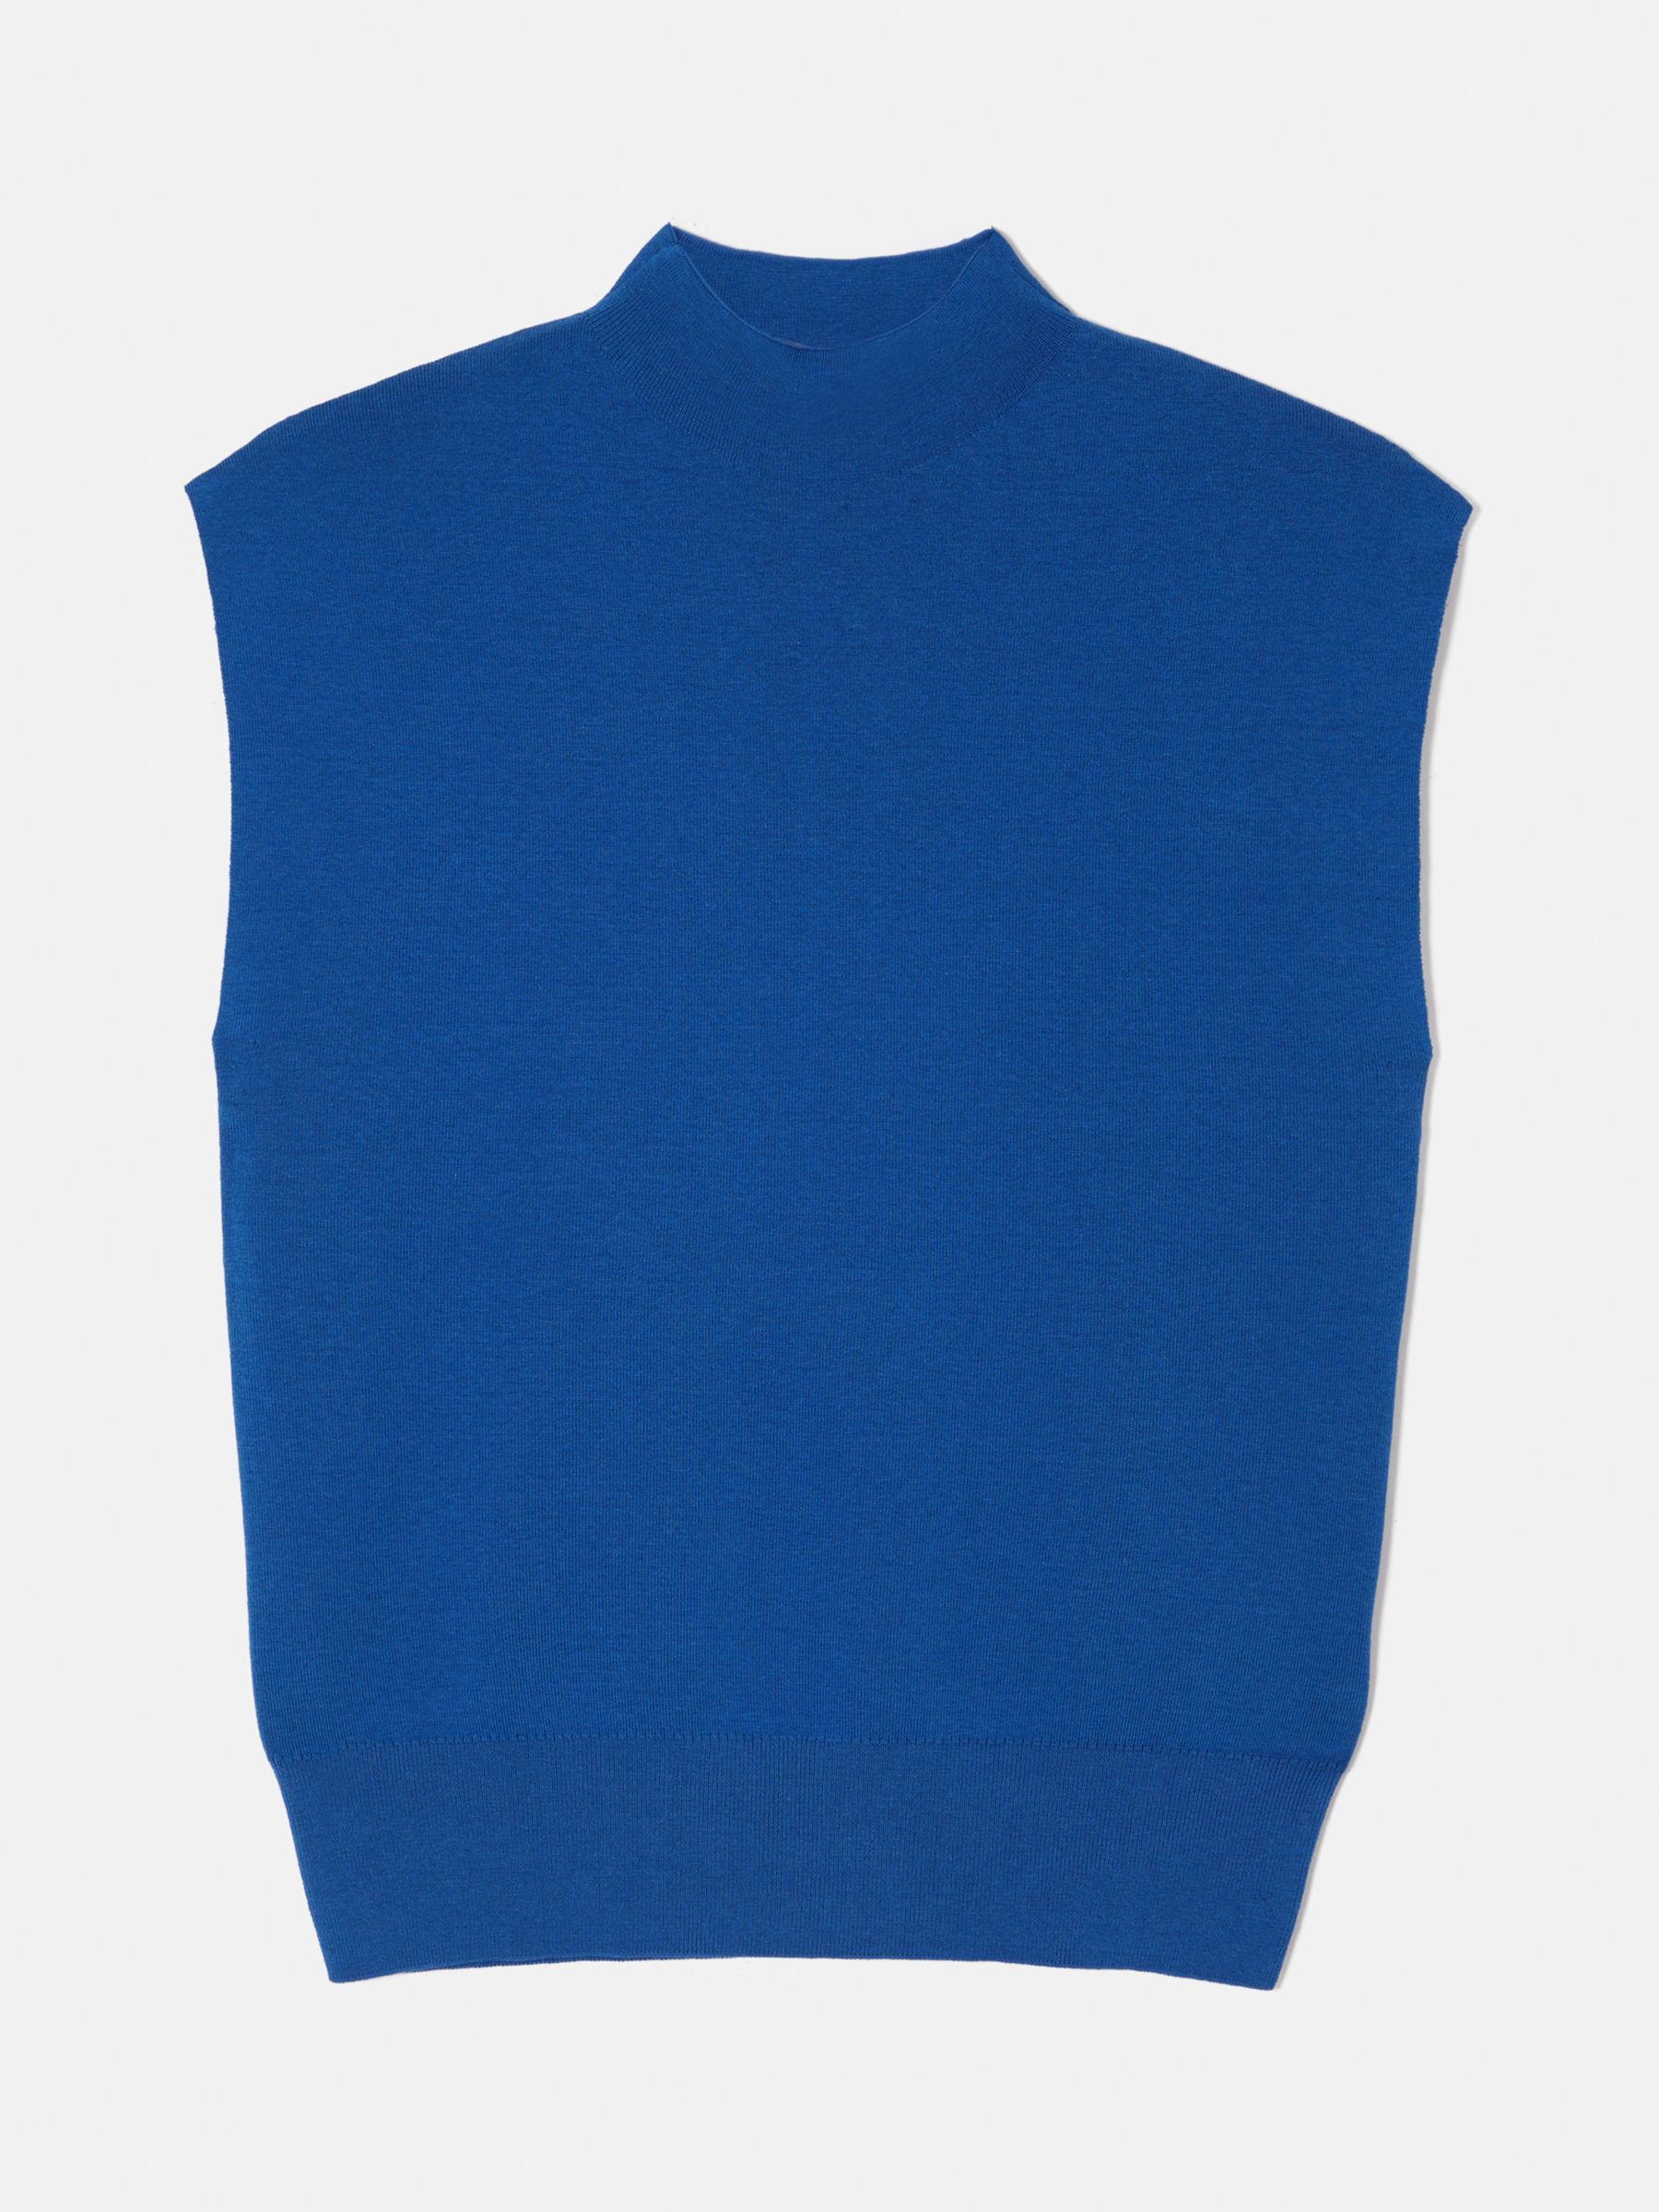 Jigsaw Silk Cotton Blend High Neck Top, Blue, XS